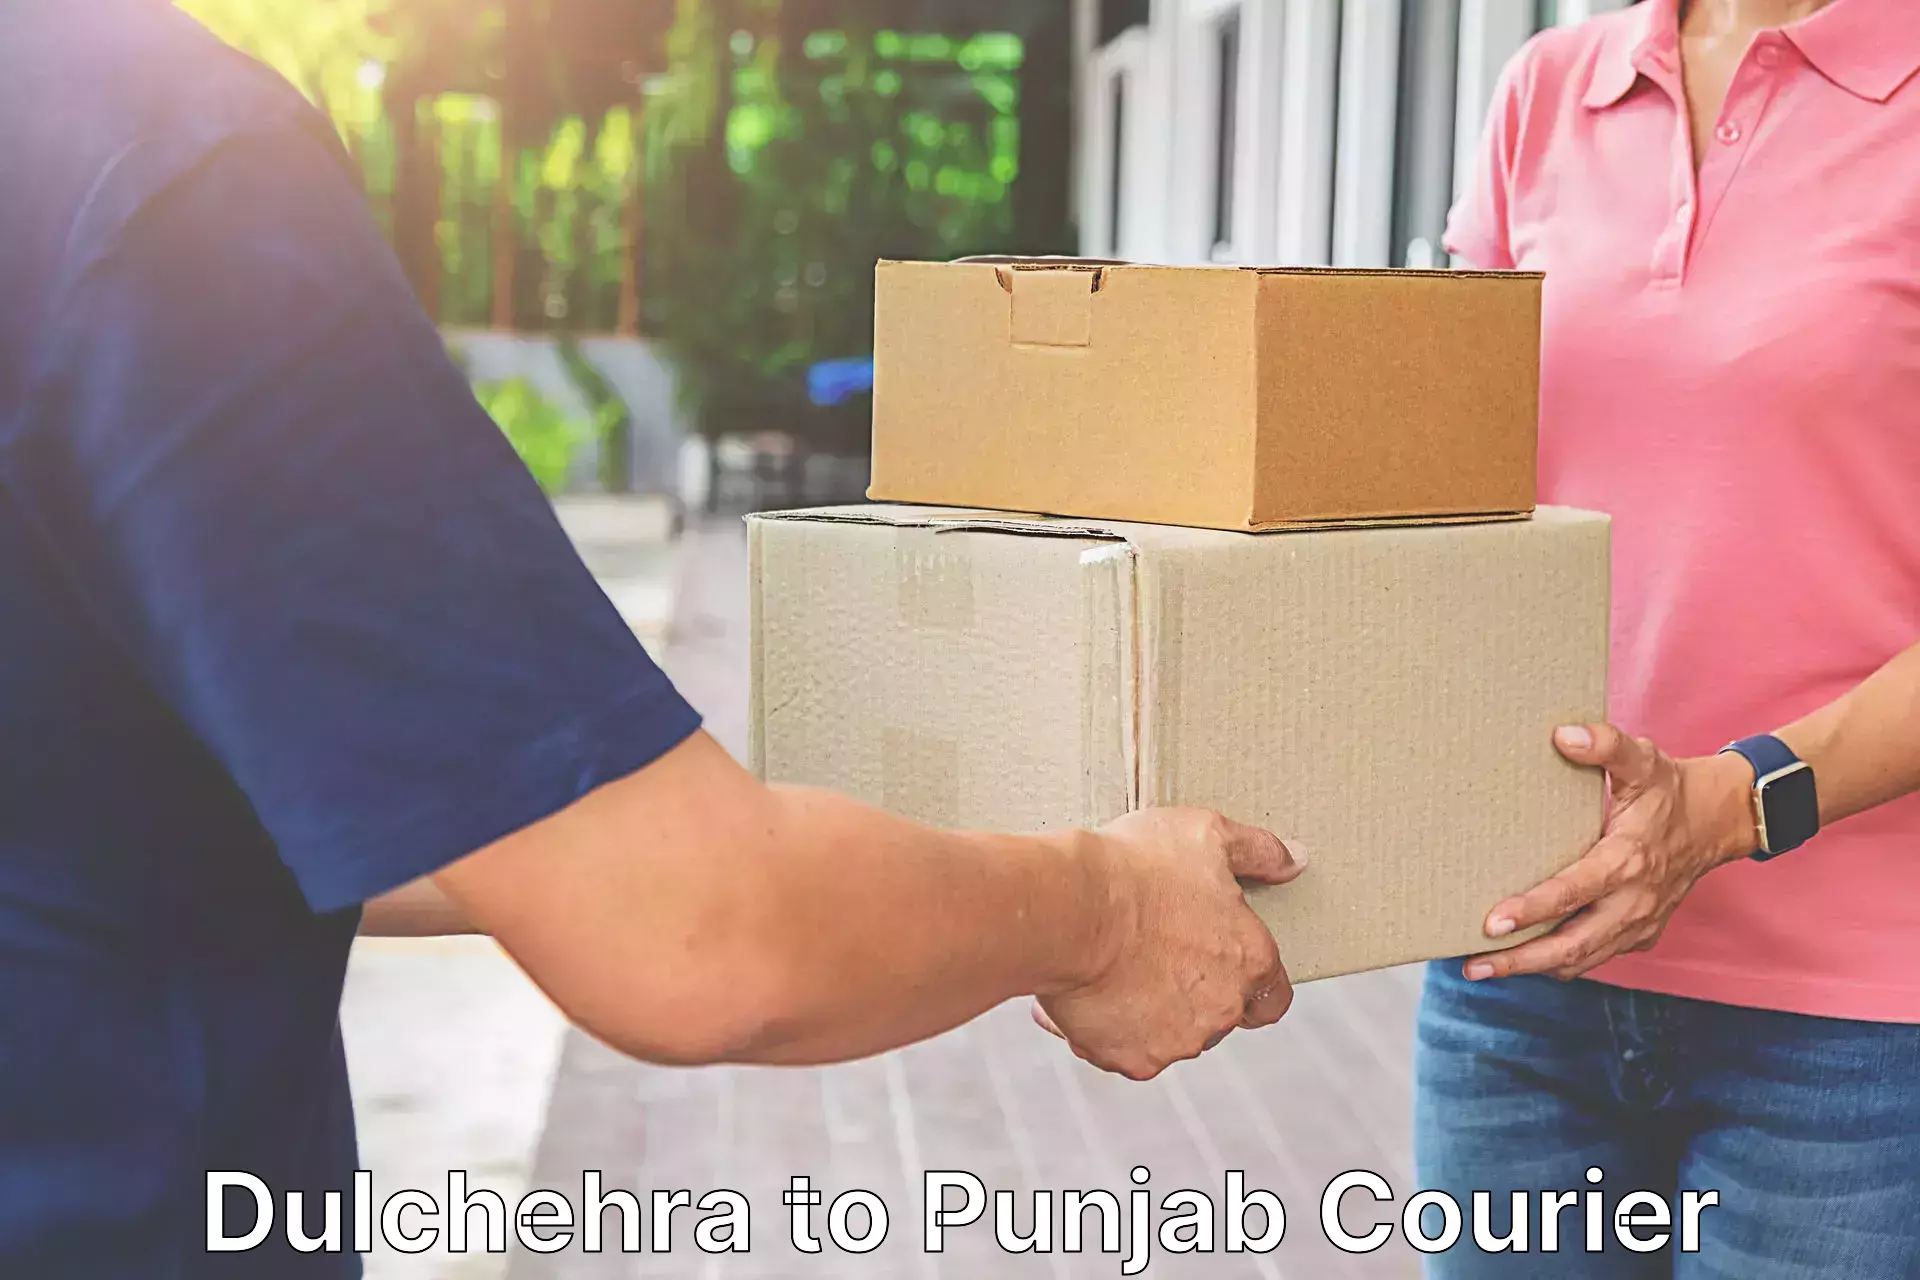 Multi-national courier services Dulchehra to Rupnagar